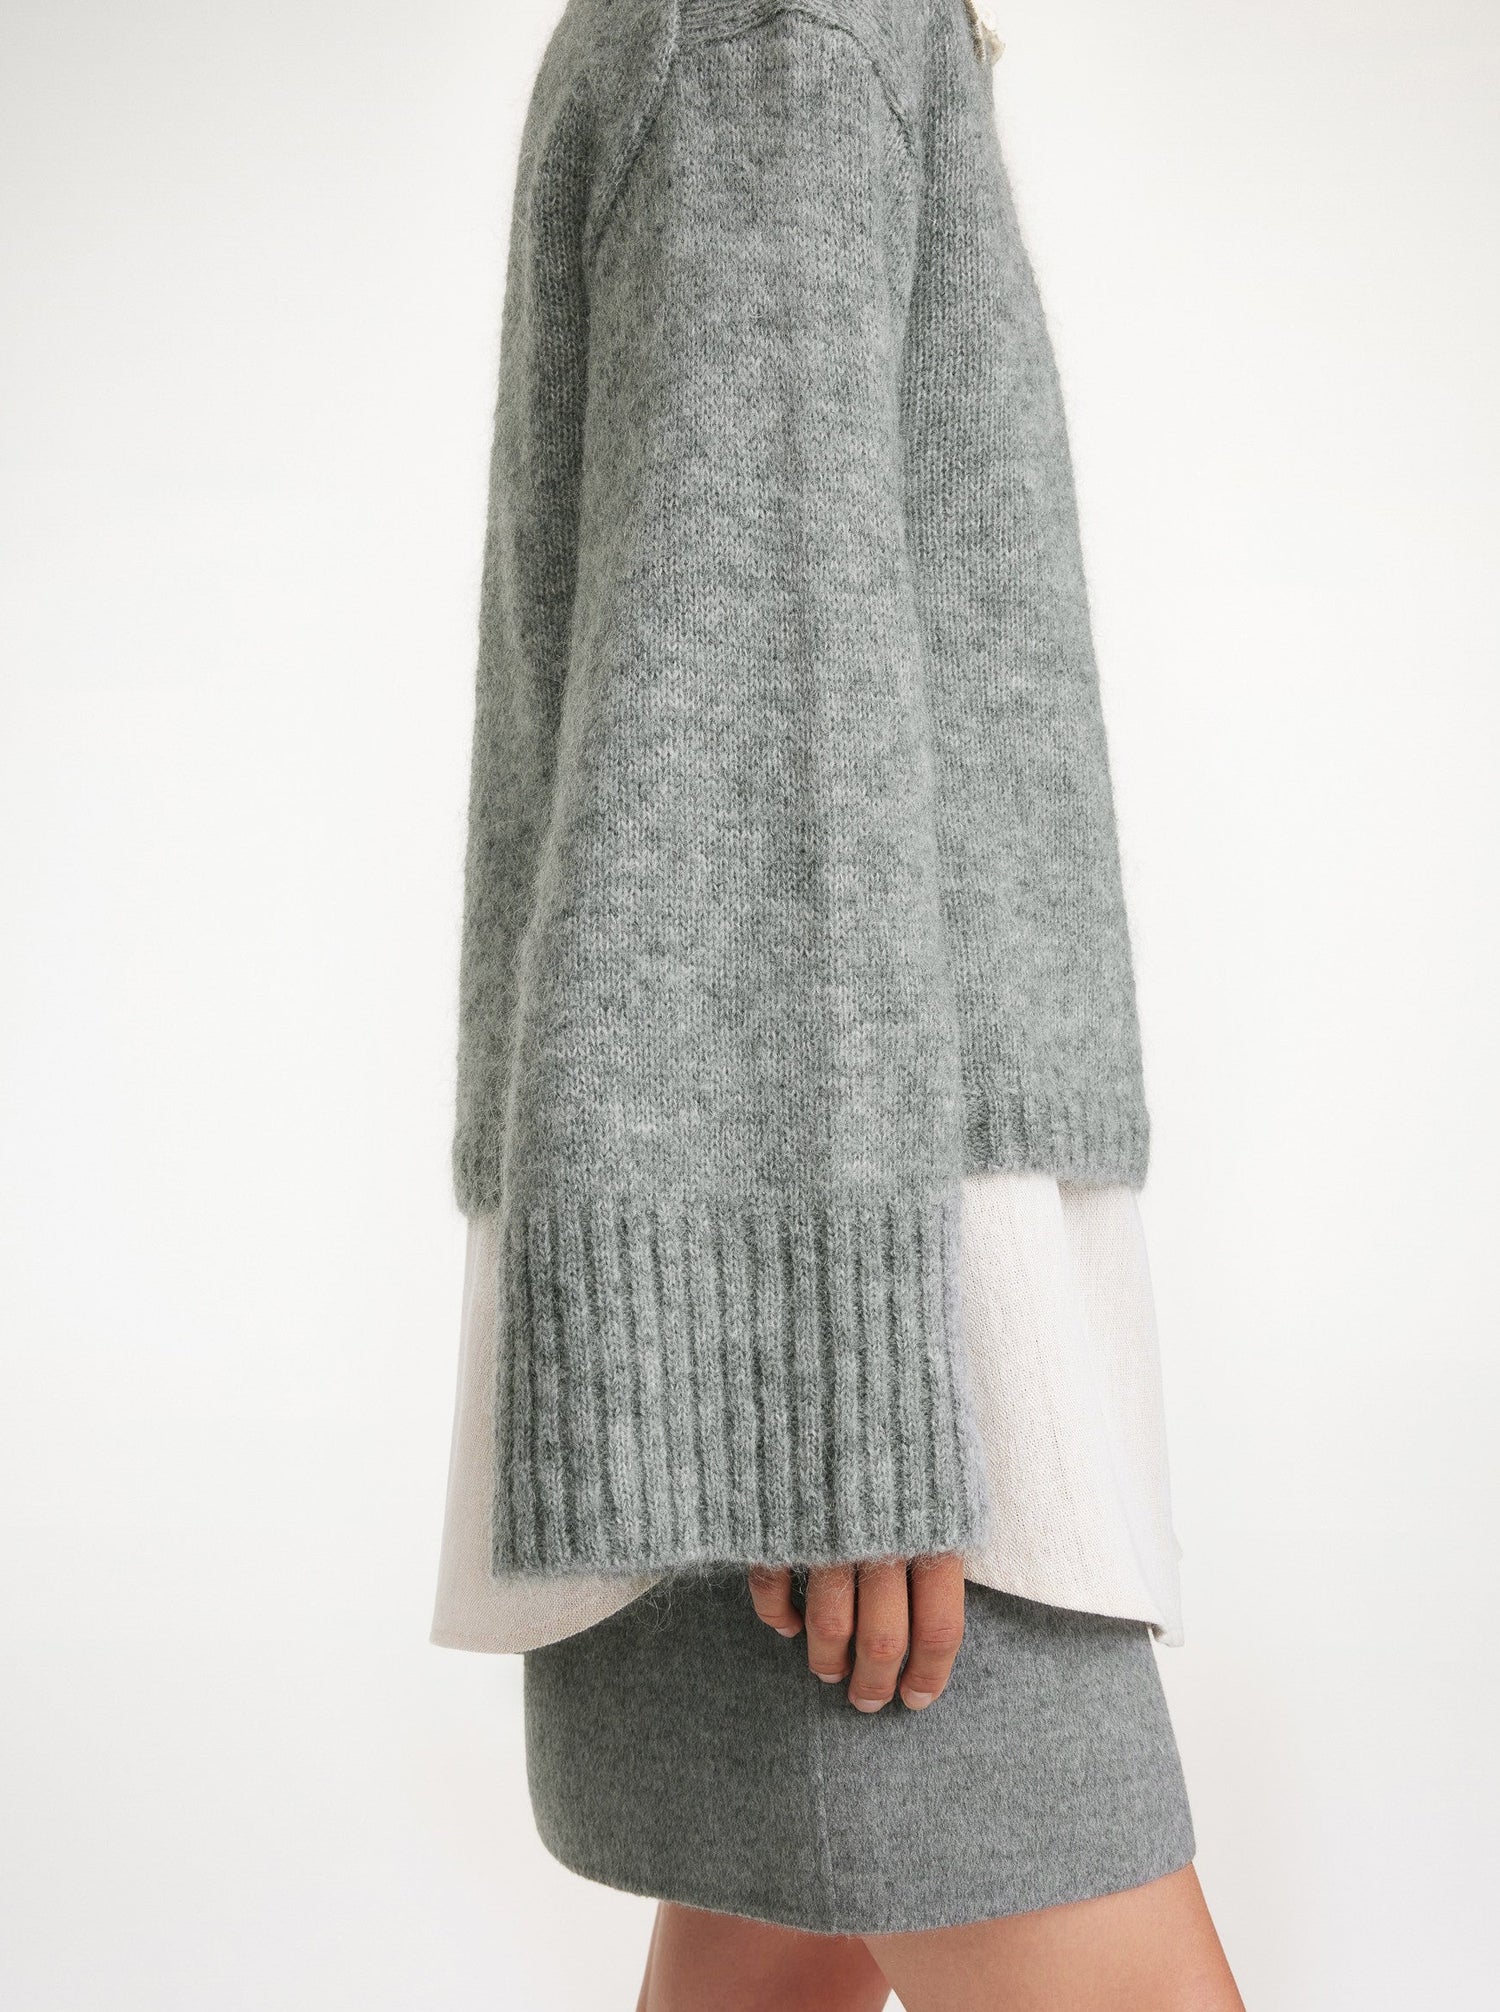 CIERRA knitted sweater, grey melange